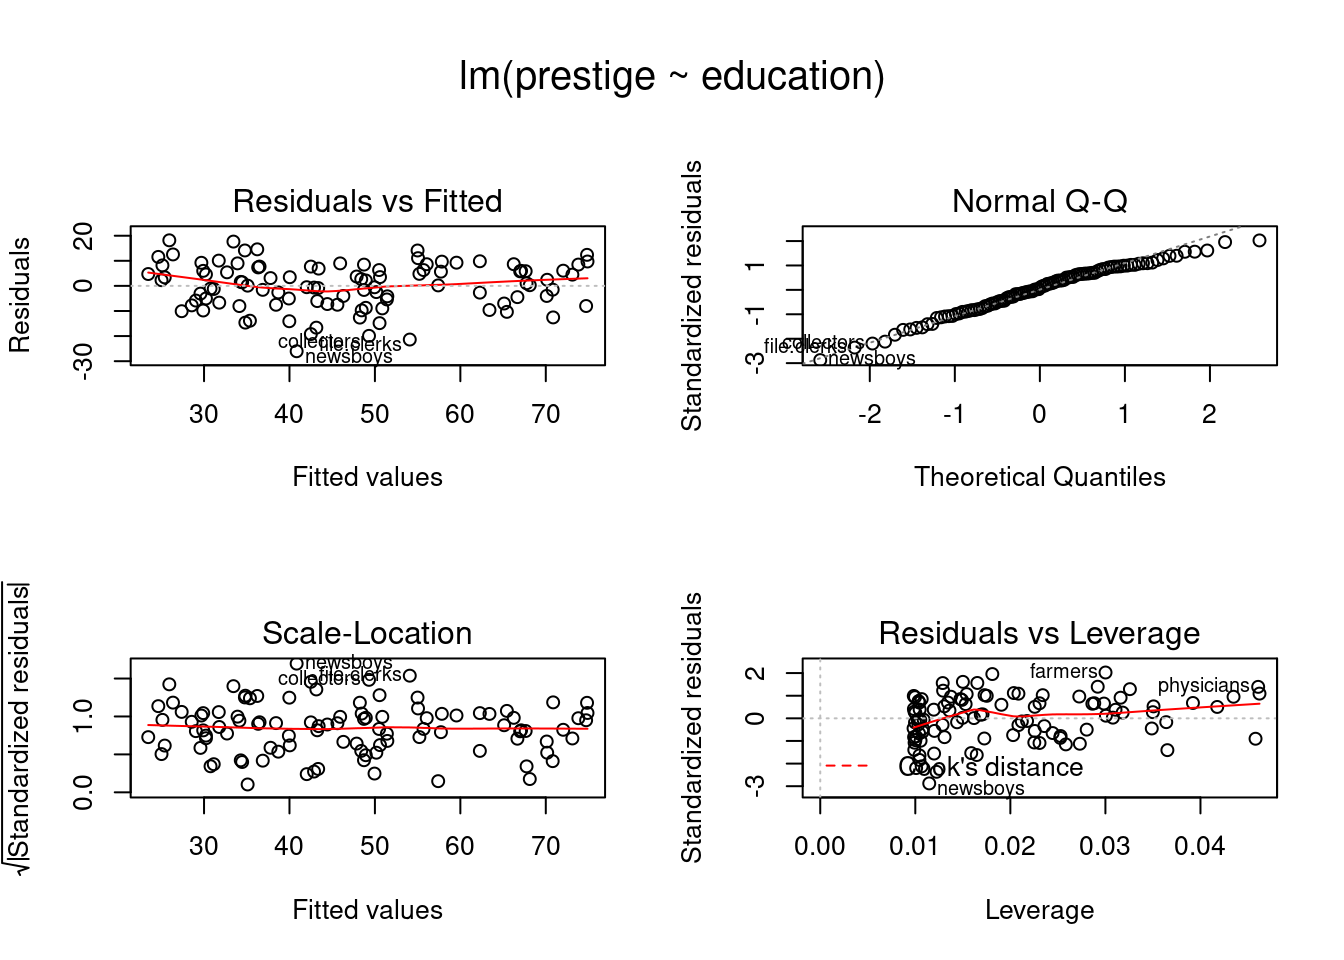 Diagnósticos para o modelo de análise de regressão linear de prestige x education para o conjunto de dados Prestige.